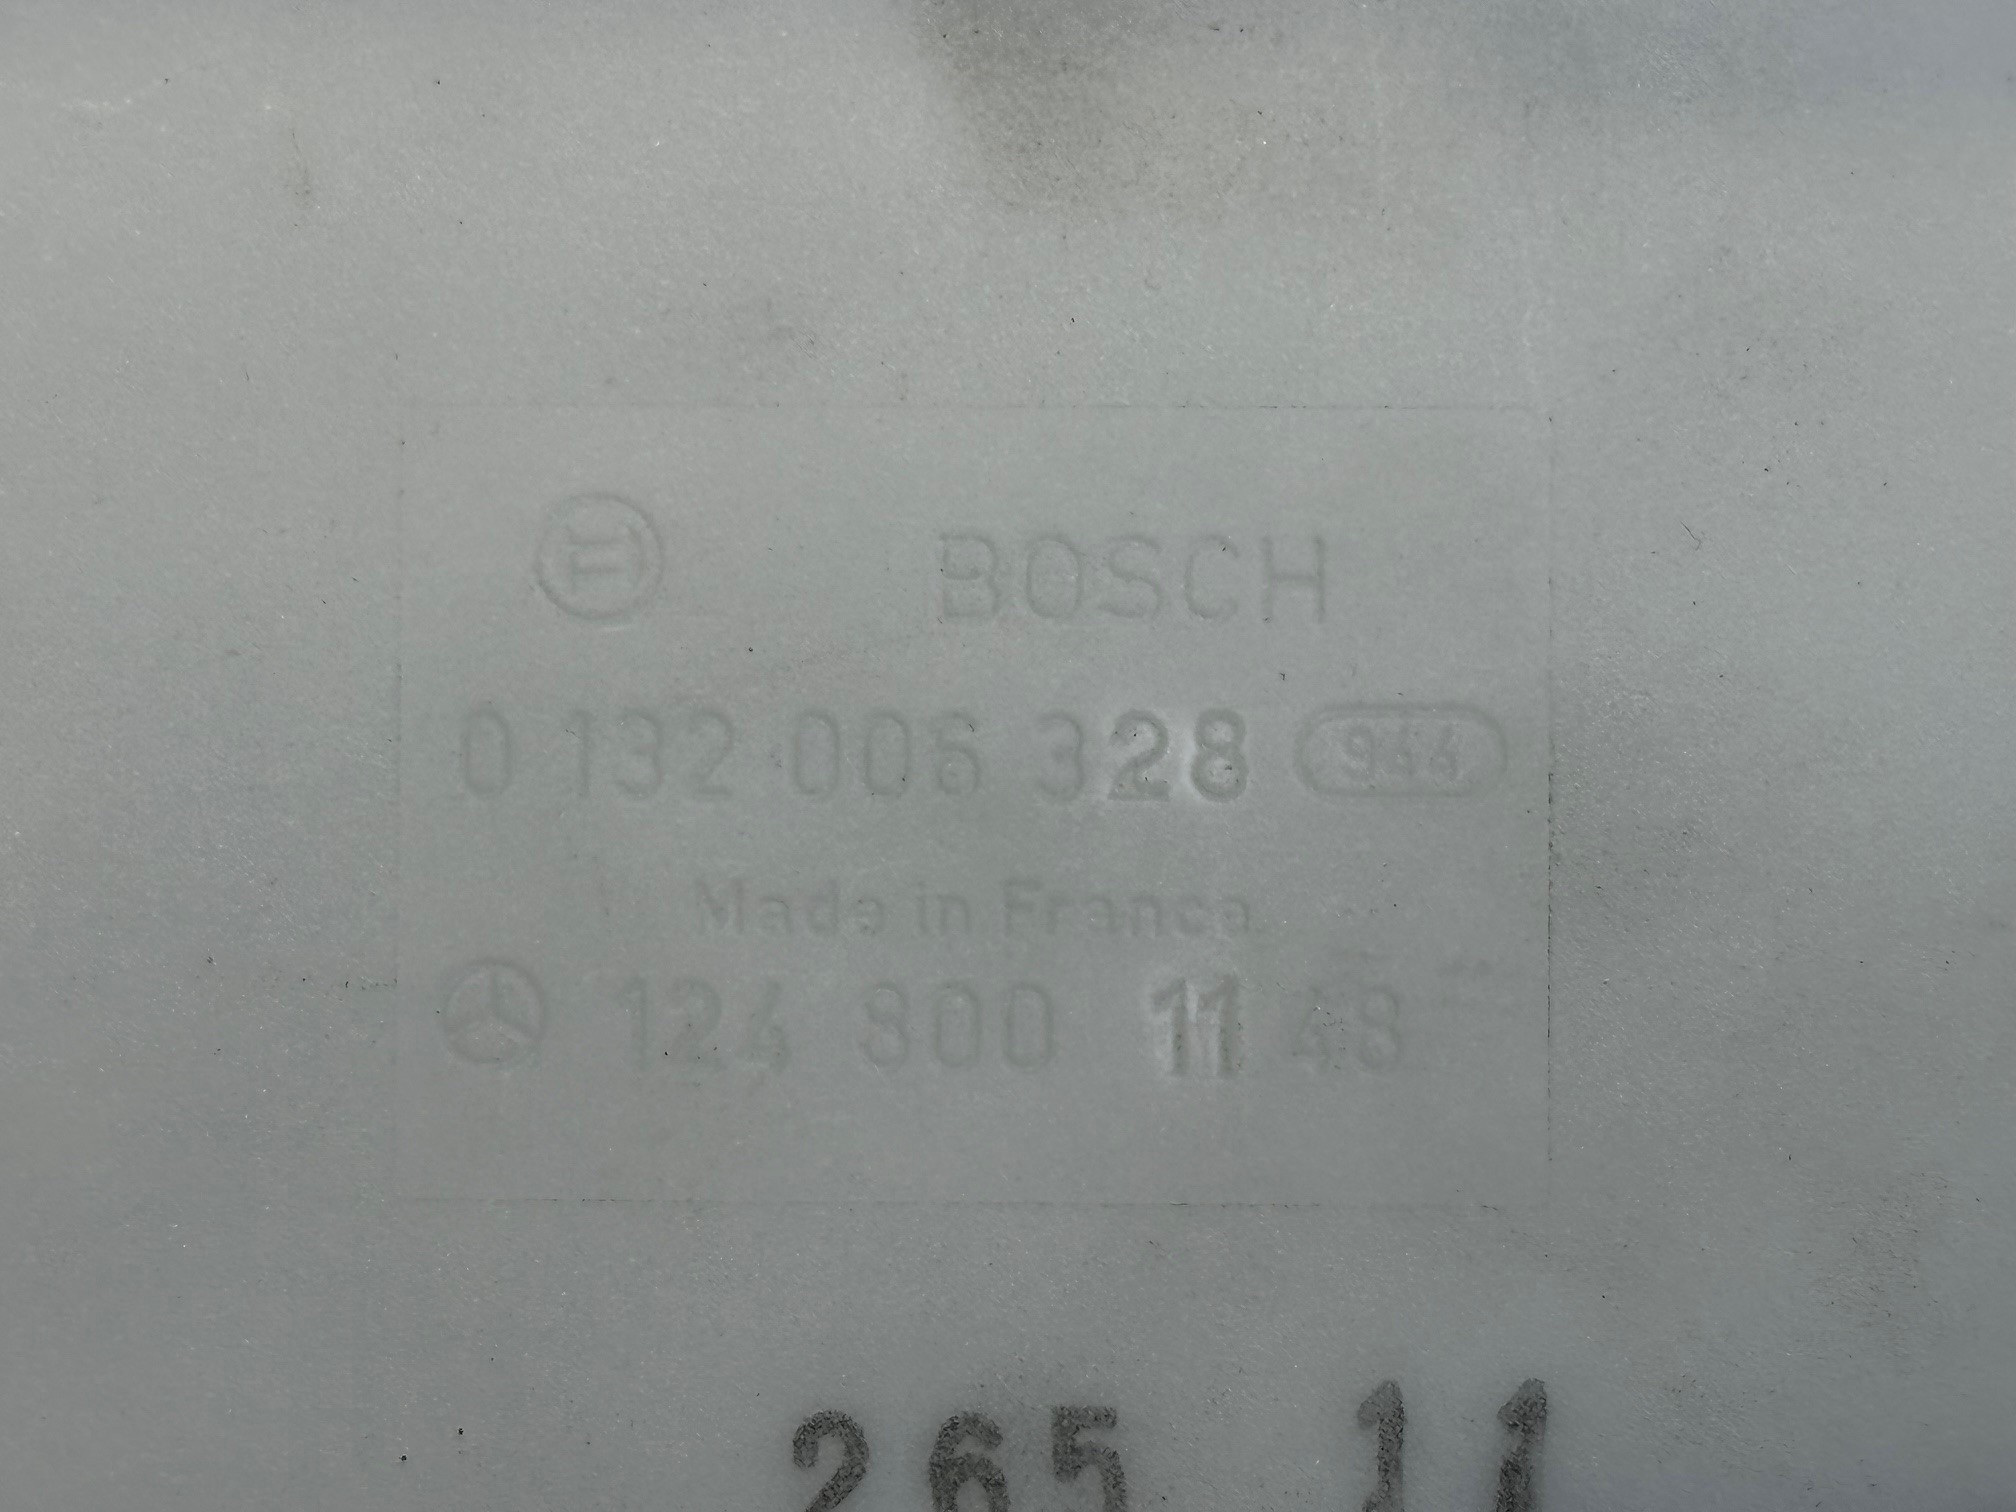 Pumpe Bosch ZV Unterdruckpumpe Mercedes-Benz W107 W124 W126 W201 Vacuumpumpe Zentralverriegelung A1248002148/ A1248000148/ A1248000948/ A1248000748/ A1248001448 A1248000348/ A1248001148/ A1248001348/ A1248001148 Bosch 0132006328 Kopie